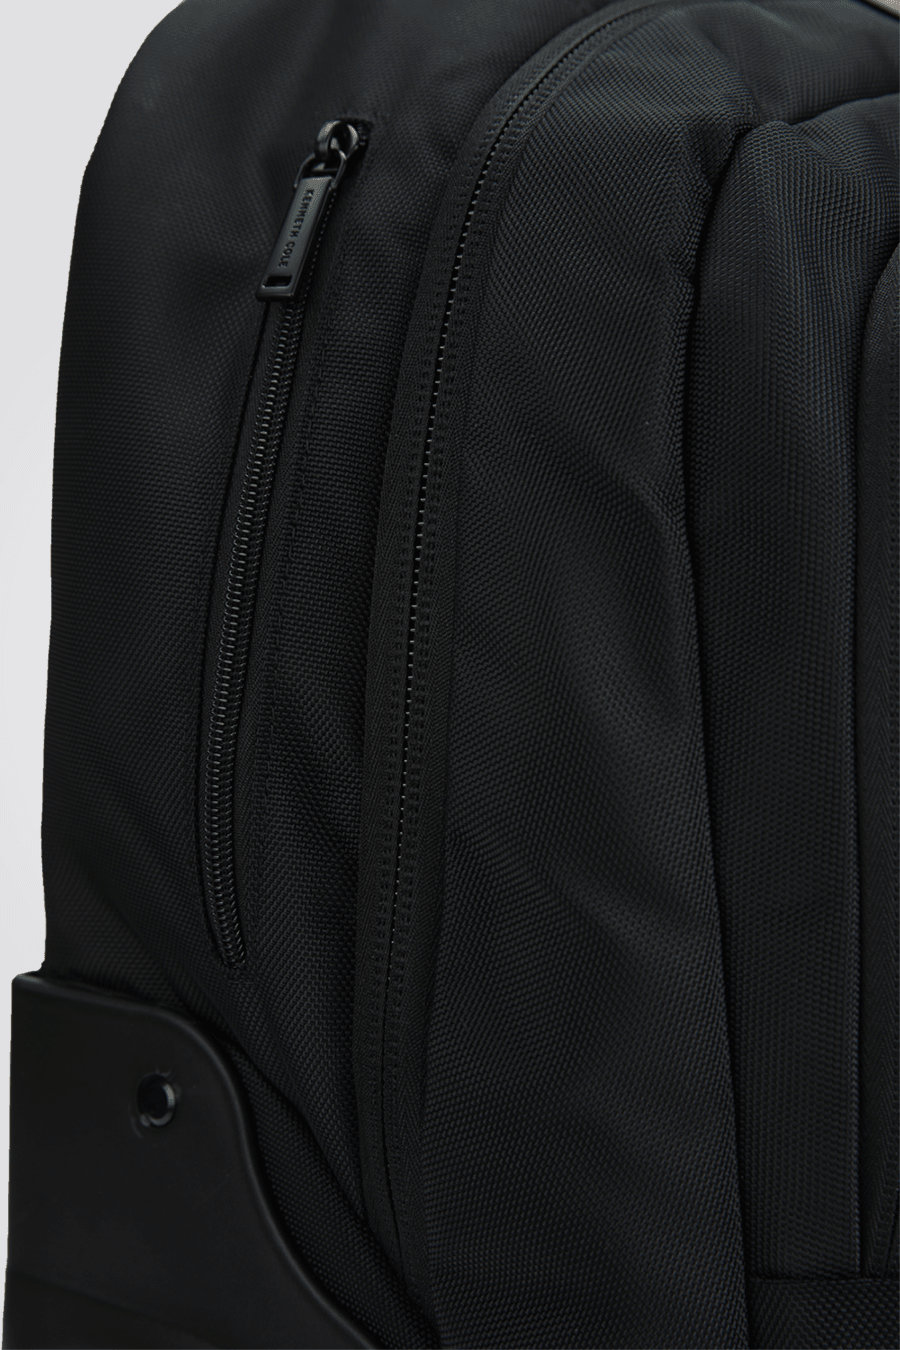 KENNETH COLE - תיק גב משולב טרולי בצבע שחור - MASHBIR//365